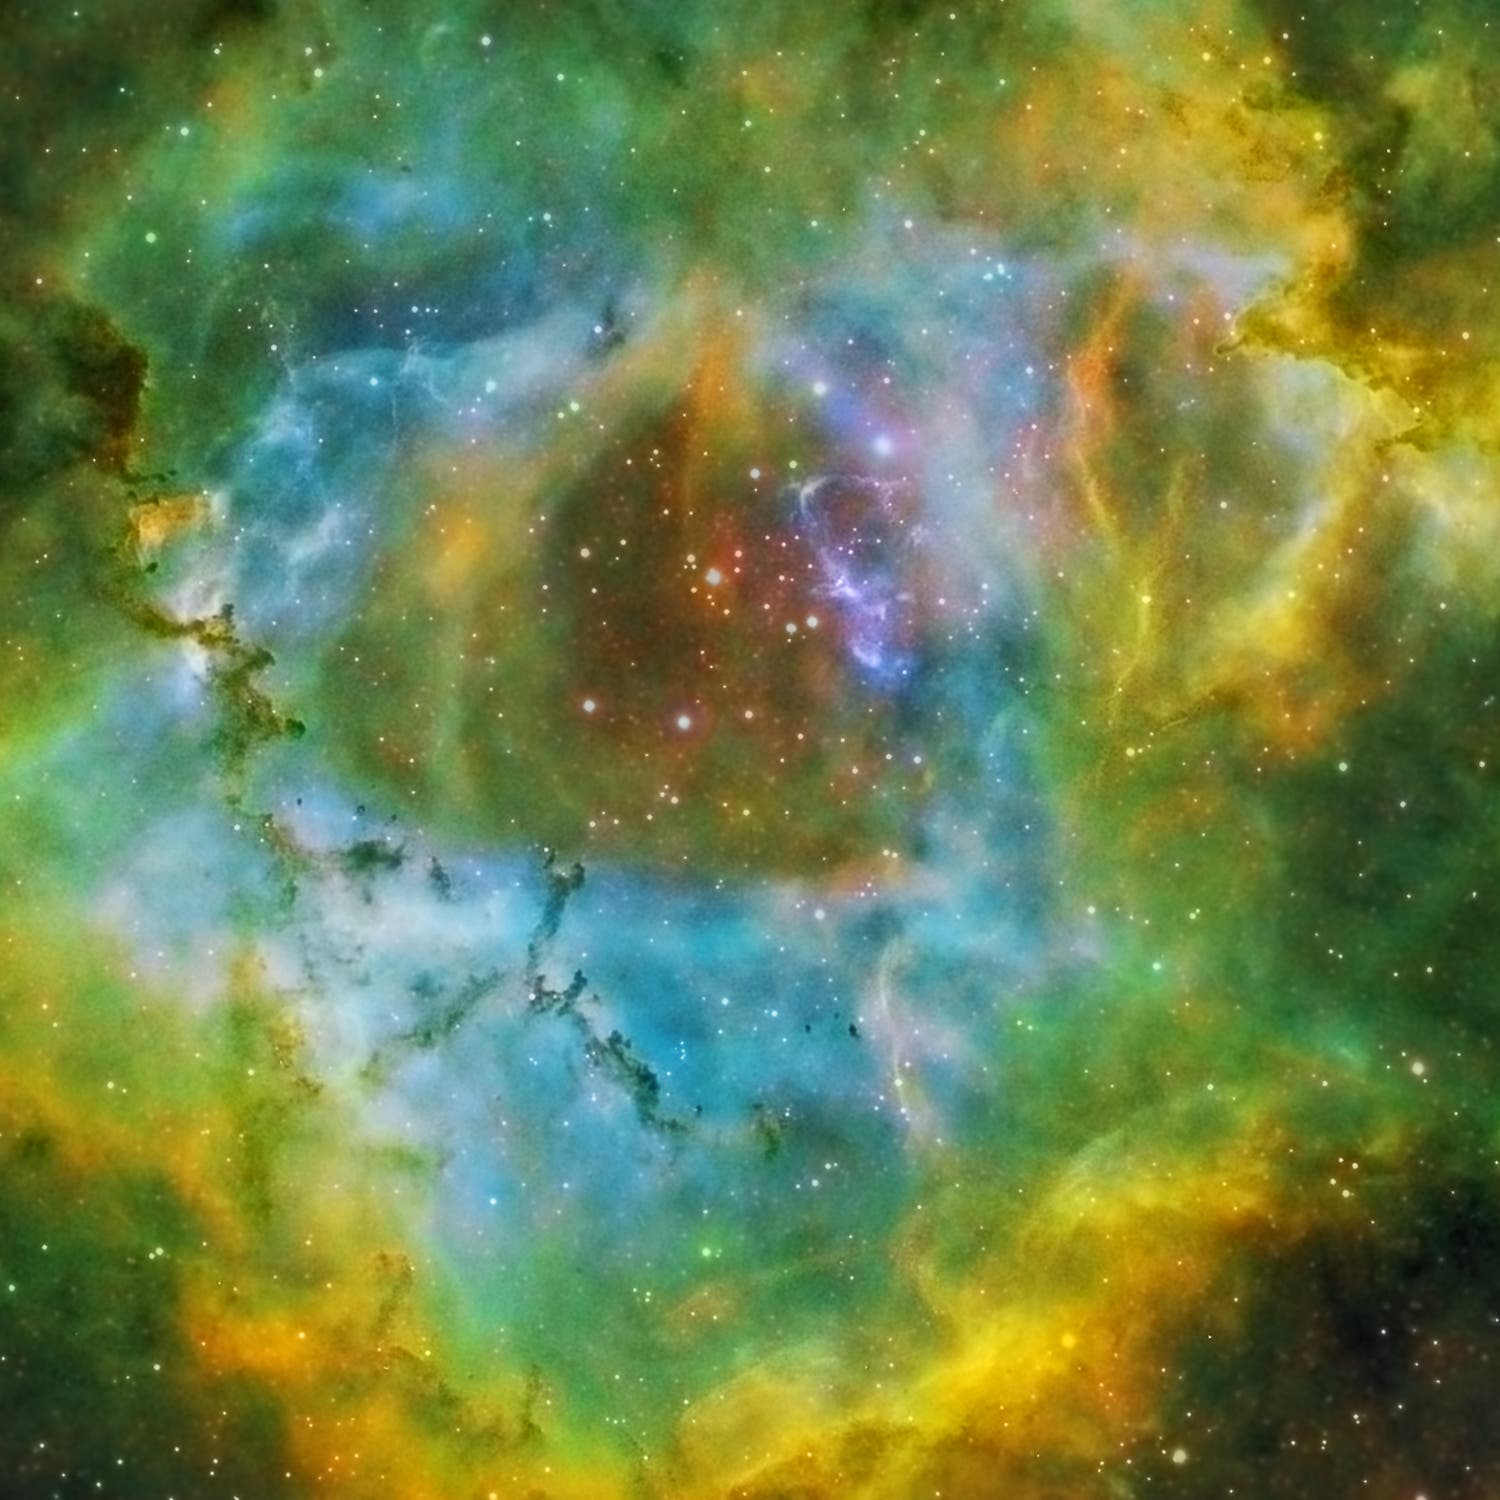 NGC 2244 in Hubble-Palette 100 % Crop des Zentrums